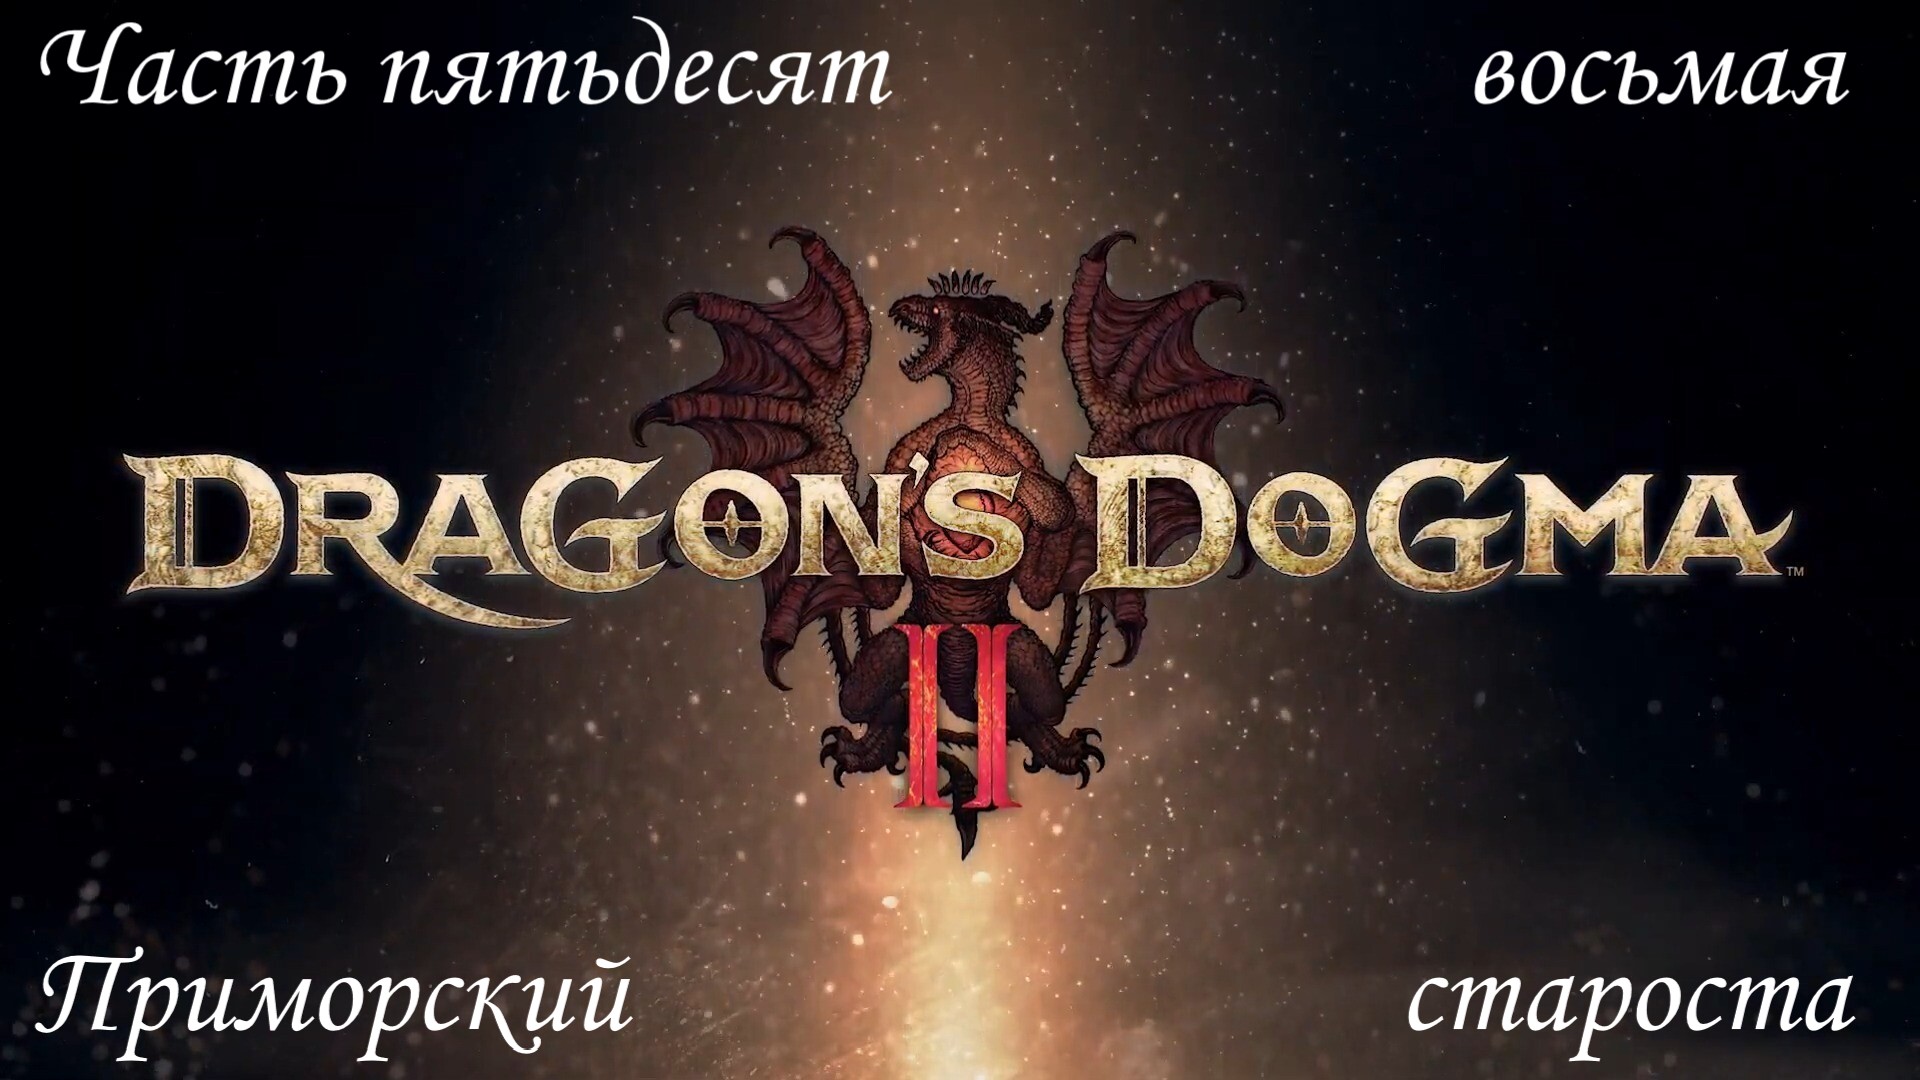 Прохождение Dragon's Dogma 2 на русском - Часть пятьдесят восьмая. Приморский староста